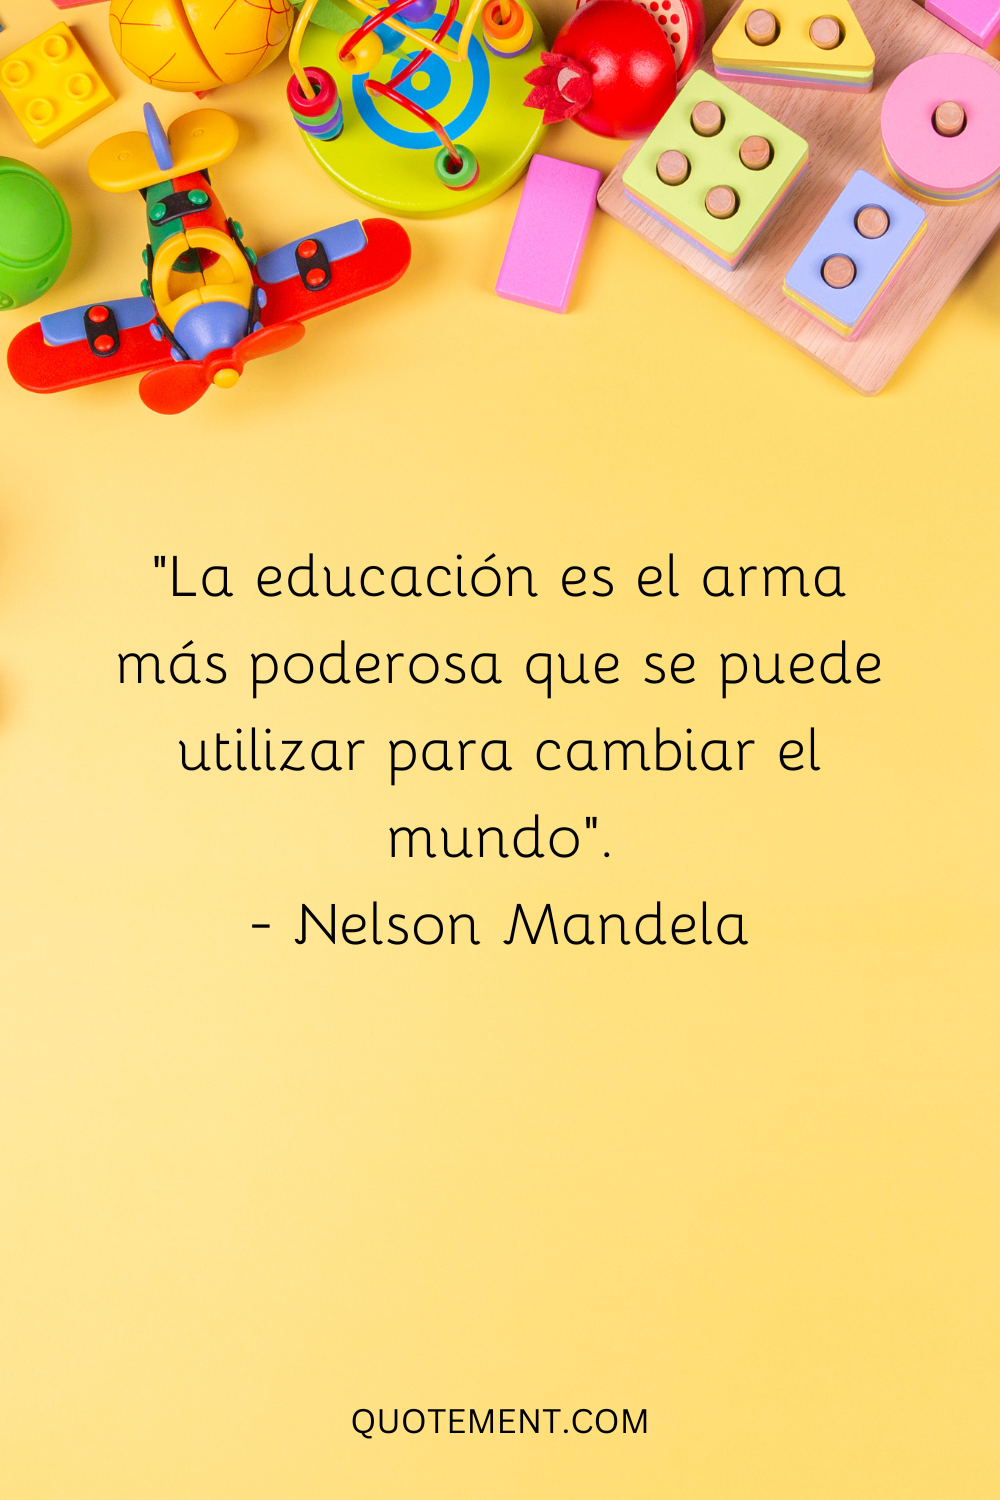 La educación es el arma más poderosa para cambiar el mundo.